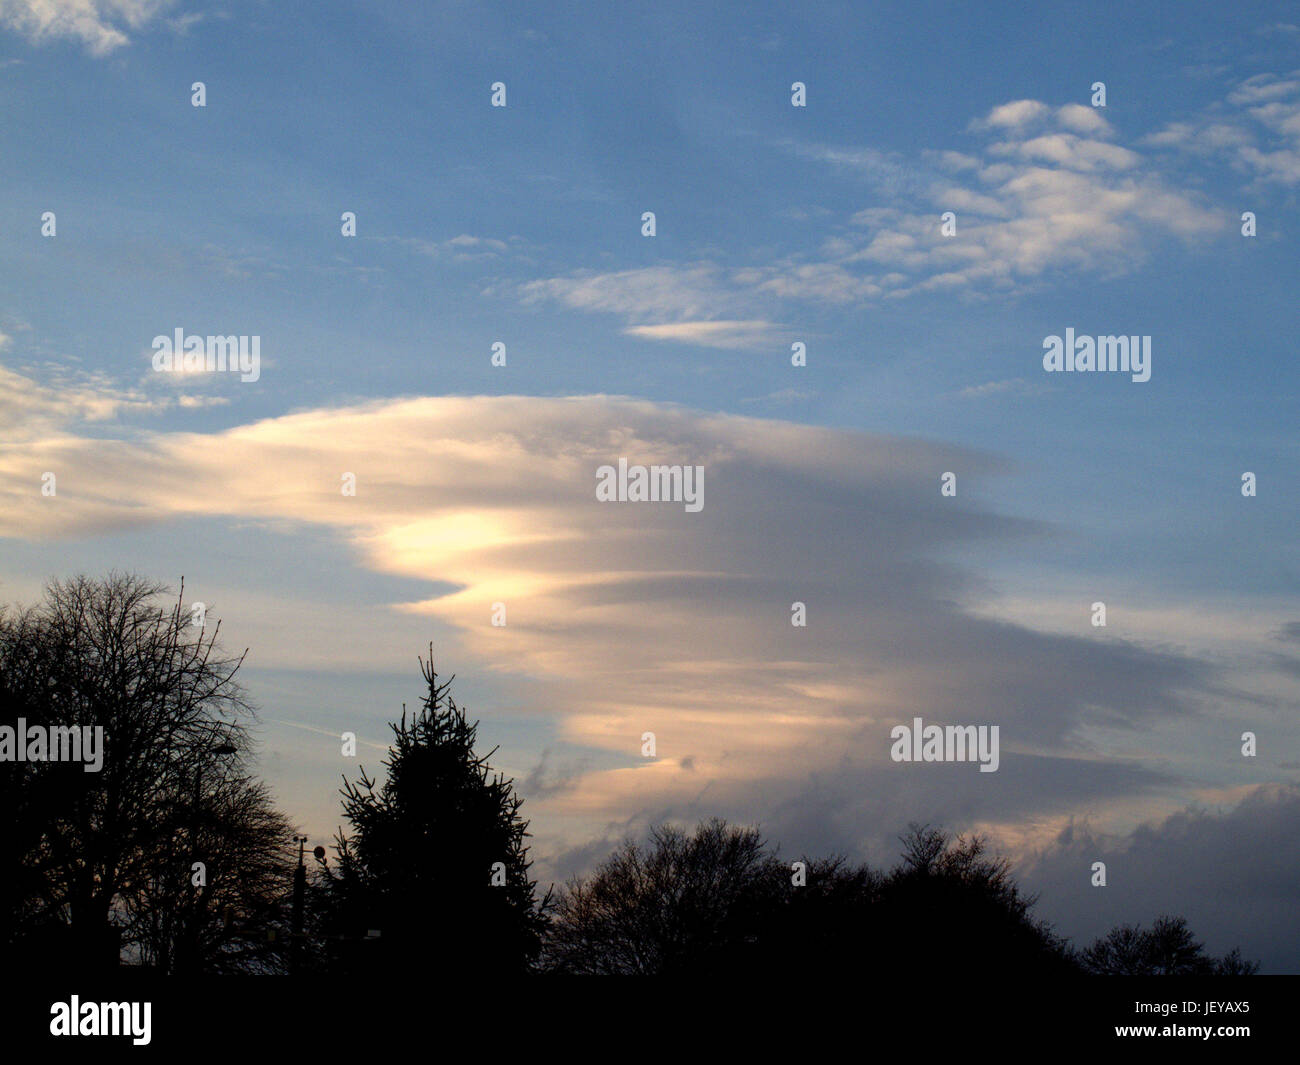 Ovni étrange forme mothership énorme au-dessus de la ville, nuages lenticulaires Altocumulus lenticularis sont stationnaires des nuages en forme de lentilles Banque D'Images